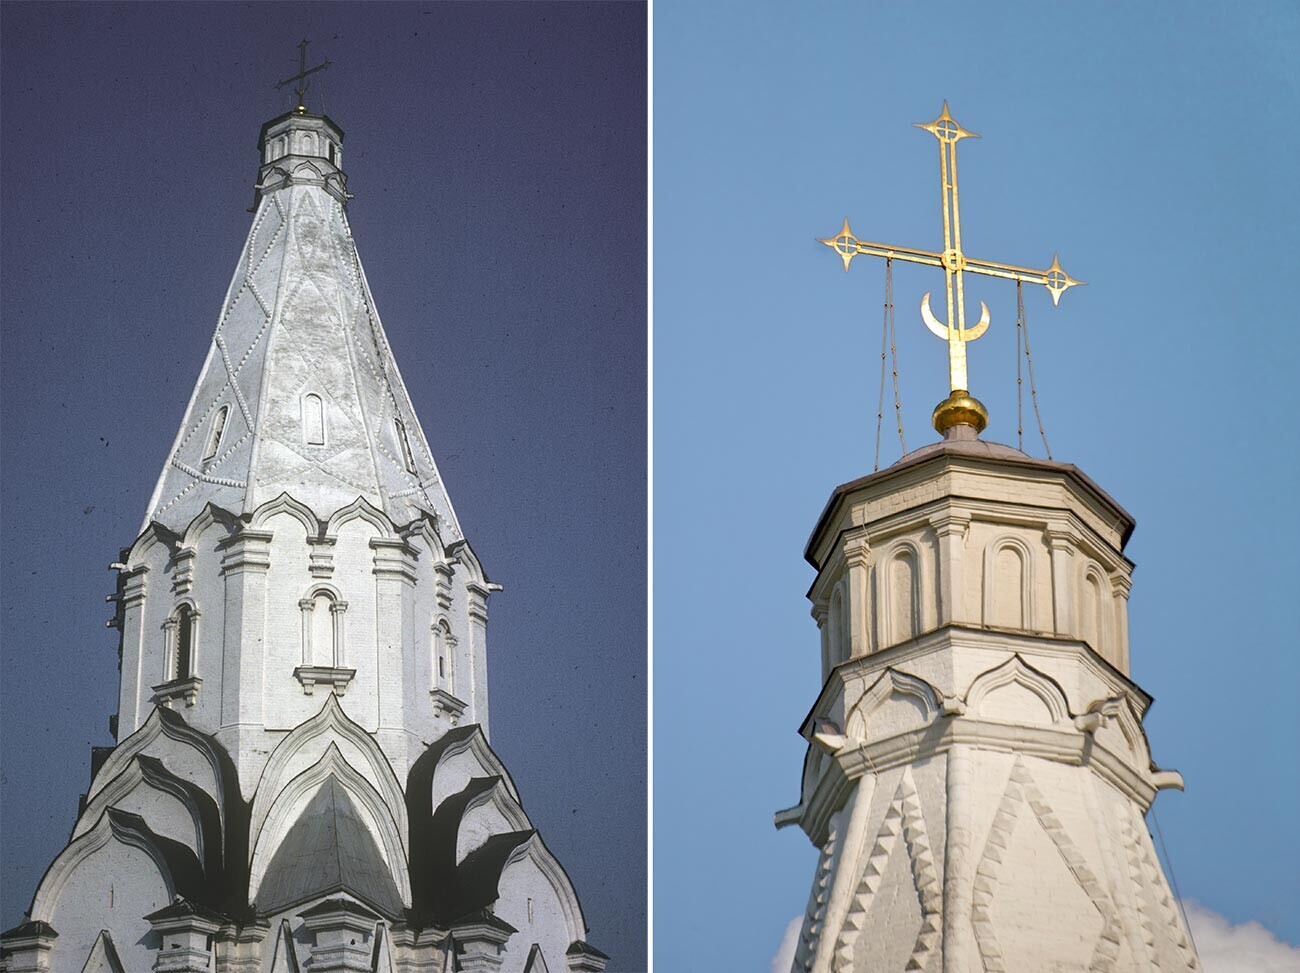 Kiri: Gereja Kenaikan. Struktur menara, pemandangan barat daya. 29 Maret 1980. Kanan: Puncak menara dengan lampion & salib, pemandangan barat. 8 Juni 2014